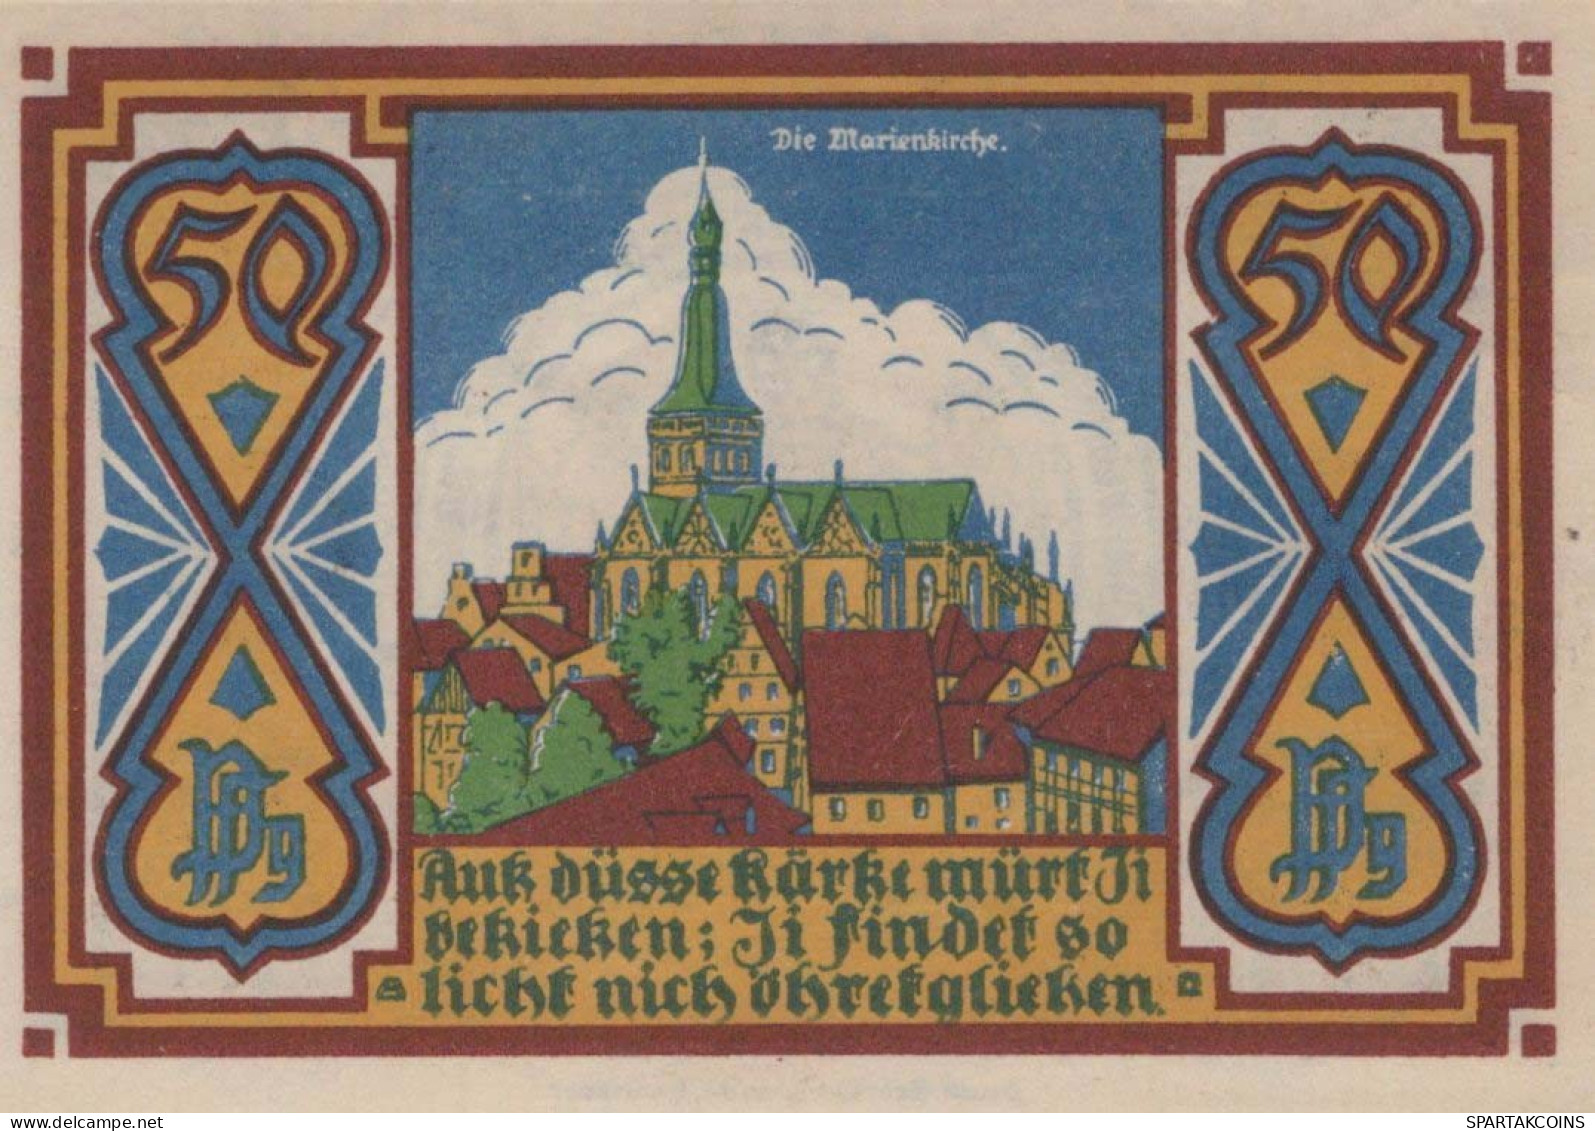 50 PFENNIG 1921 Stadt OSNABRÜCK Hanover UNC DEUTSCHLAND Notgeld Banknote #PI823 - [11] Local Banknote Issues